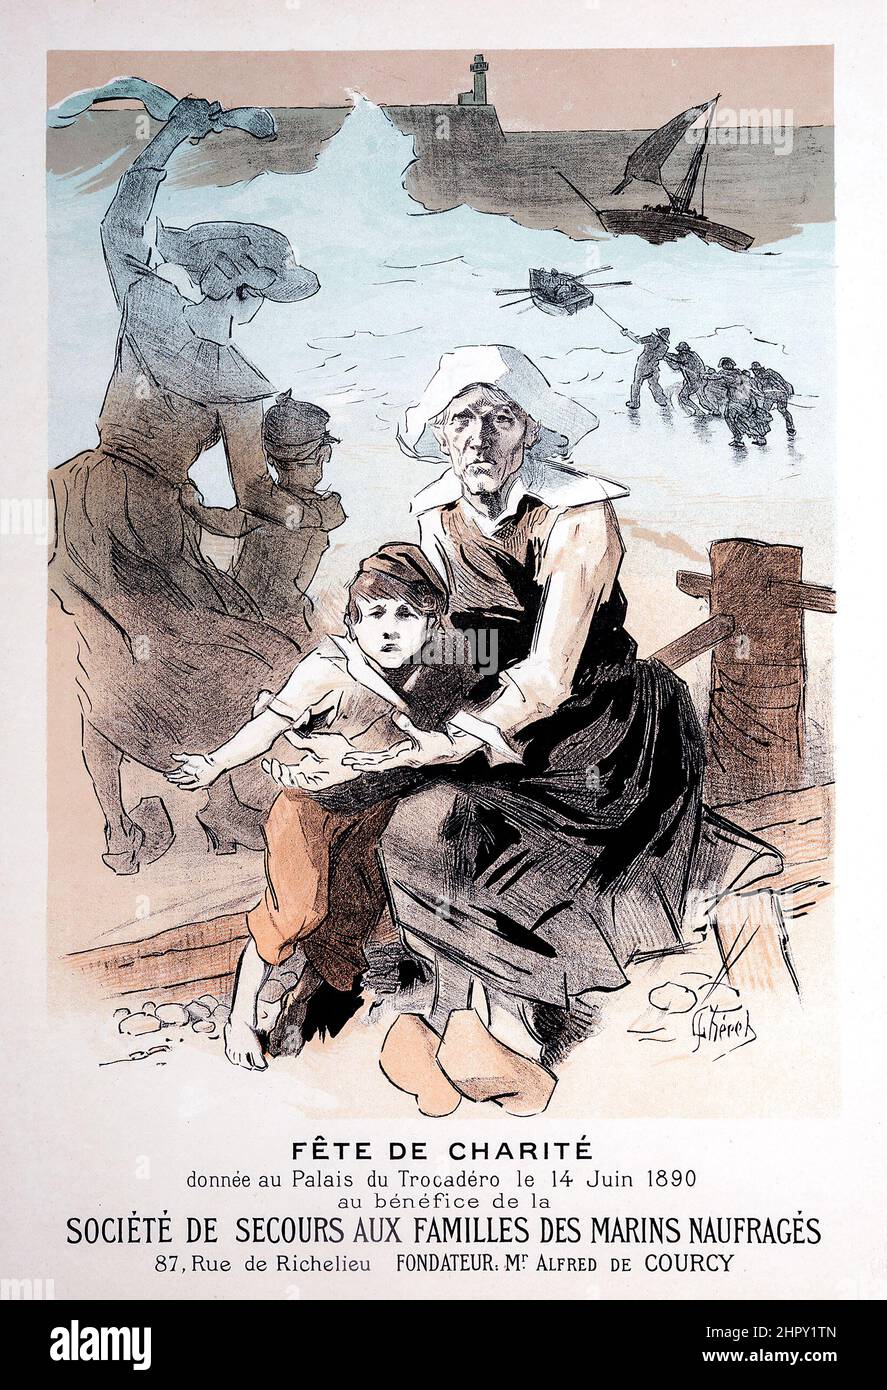 Jules Cheret (1836-1932). Fete de Charite (from Les Maitres de L'Affiche), plate 89. Lithograph. 1897. Stock Photo